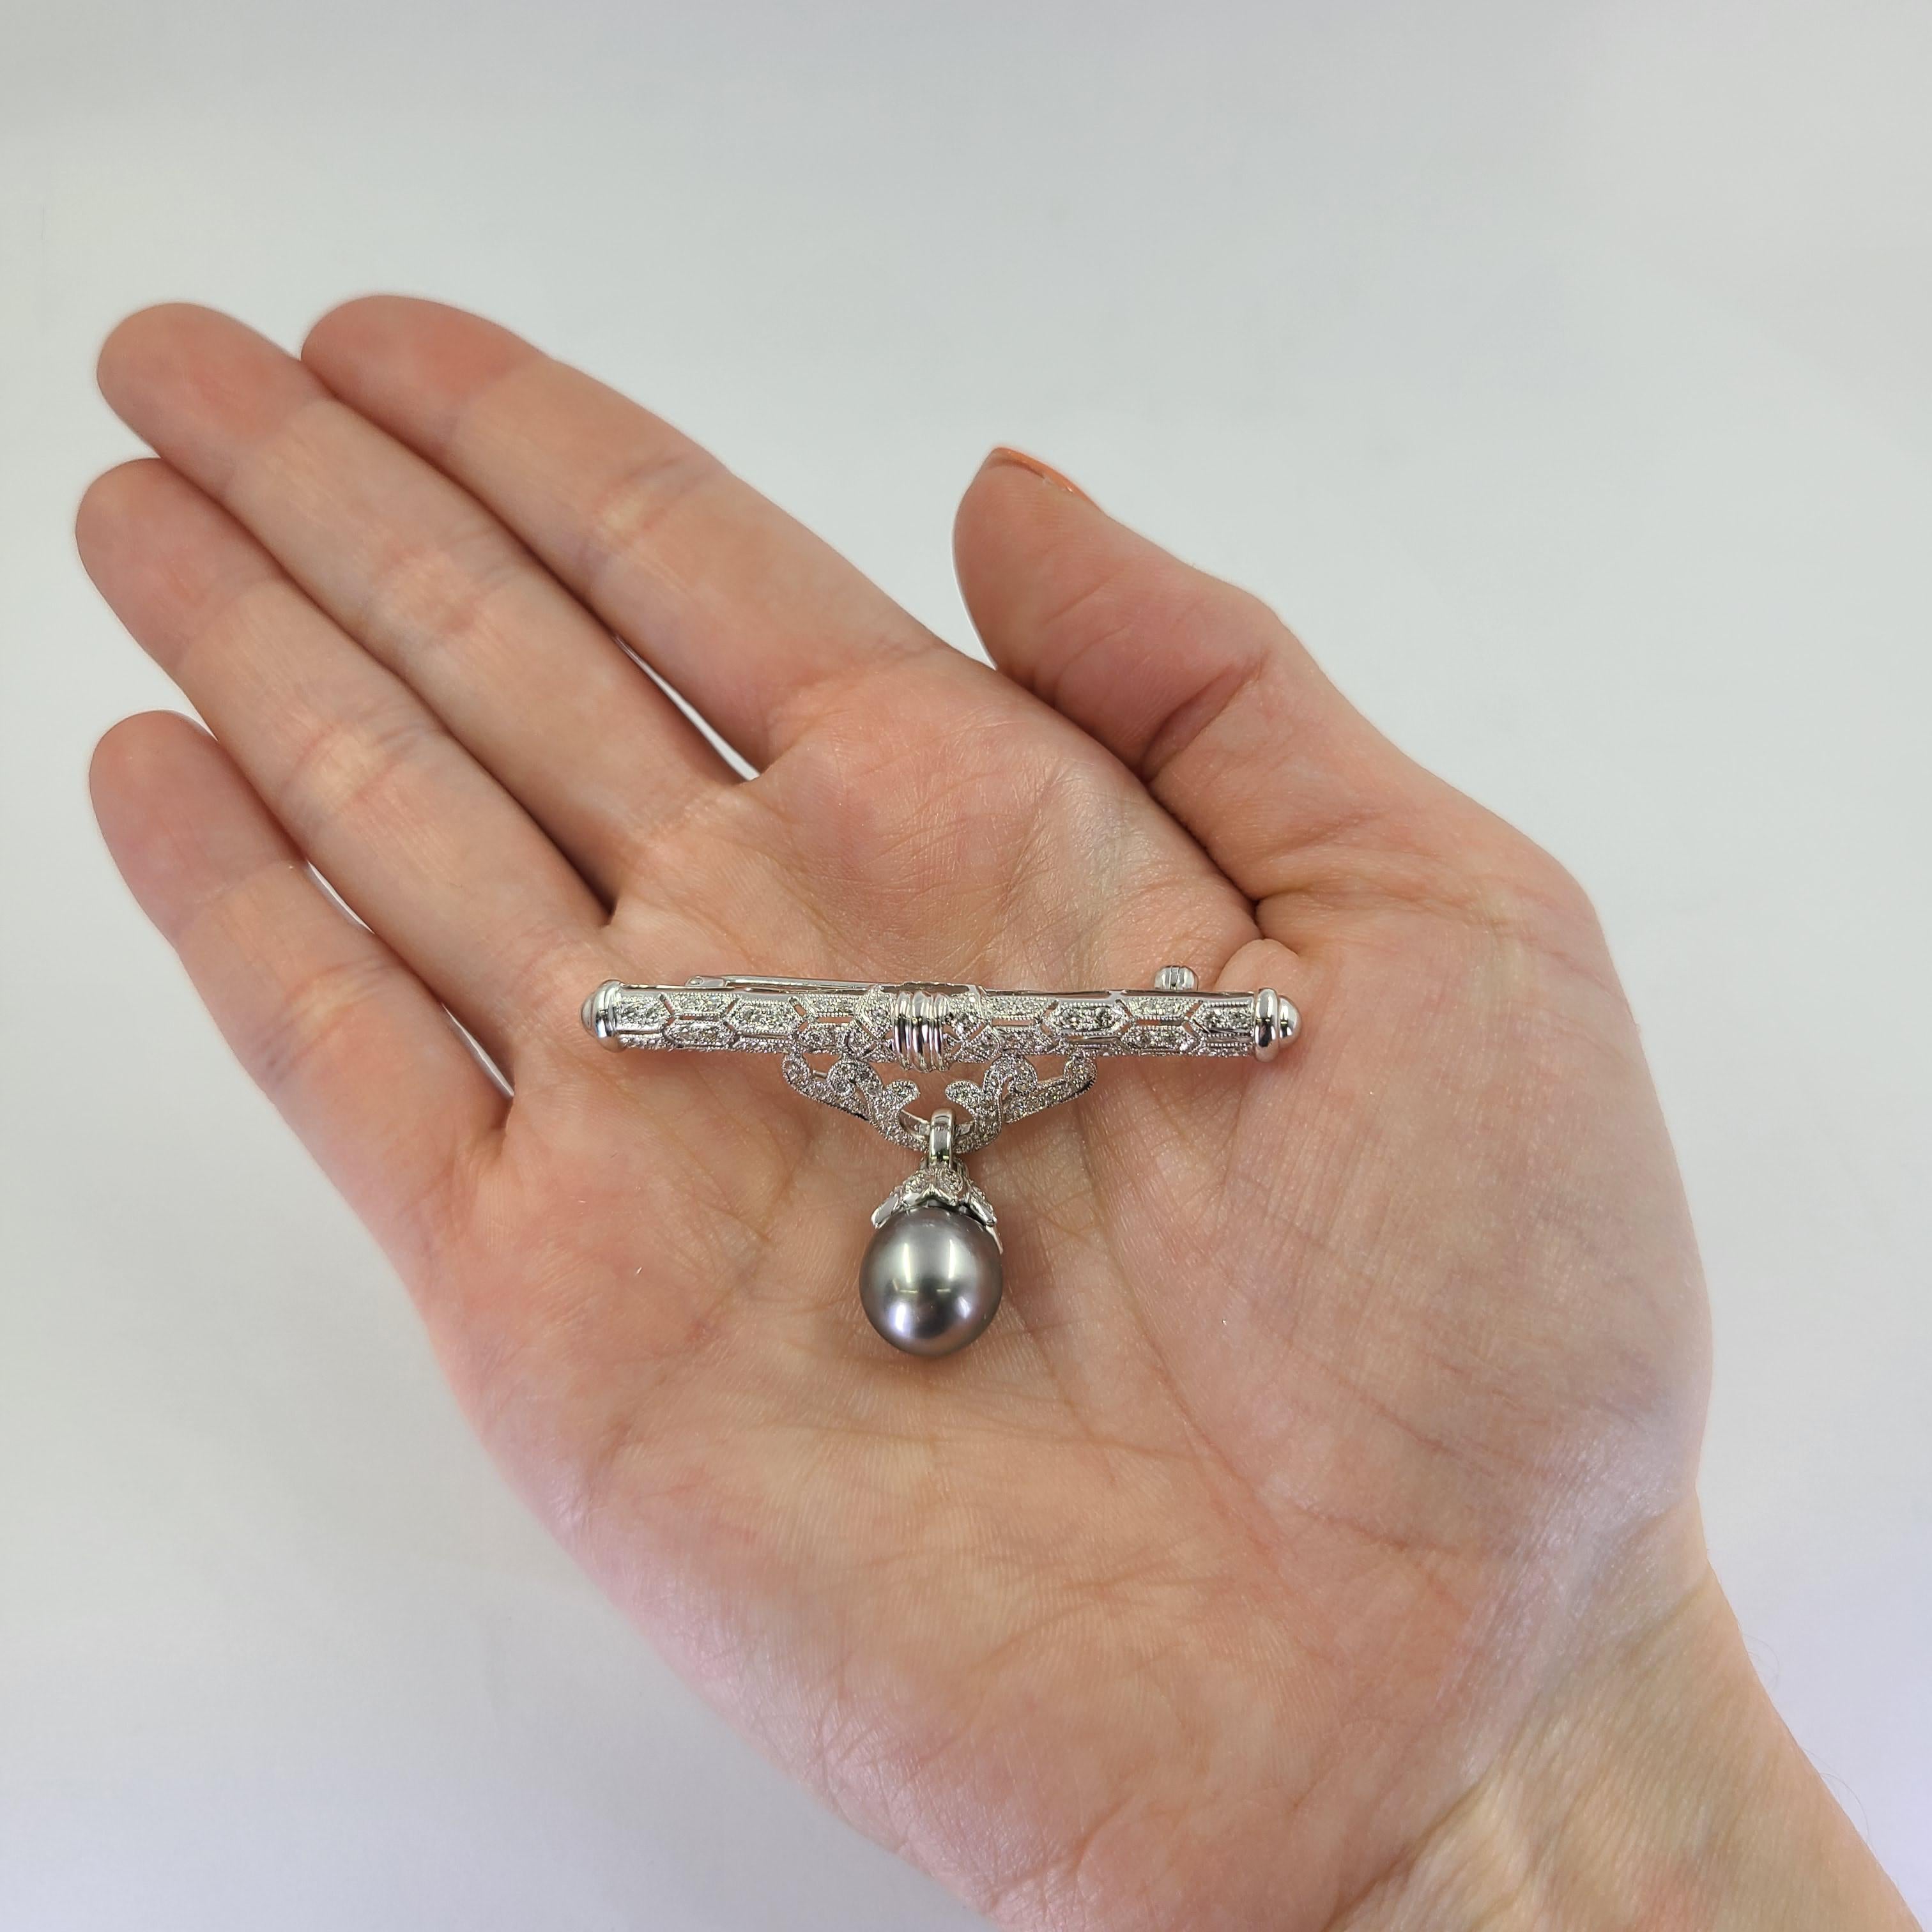 18 Karat Weißgold Bar Pin mit einer 10mm grauen Perle akzentuiert durch 86 runde Diamanten von VS/SI Reinheit & G/H Farbe insgesamt 1,00 Karat. 2 Zoll Breite. Das fertige Gewicht beträgt 9,2 Gramm.